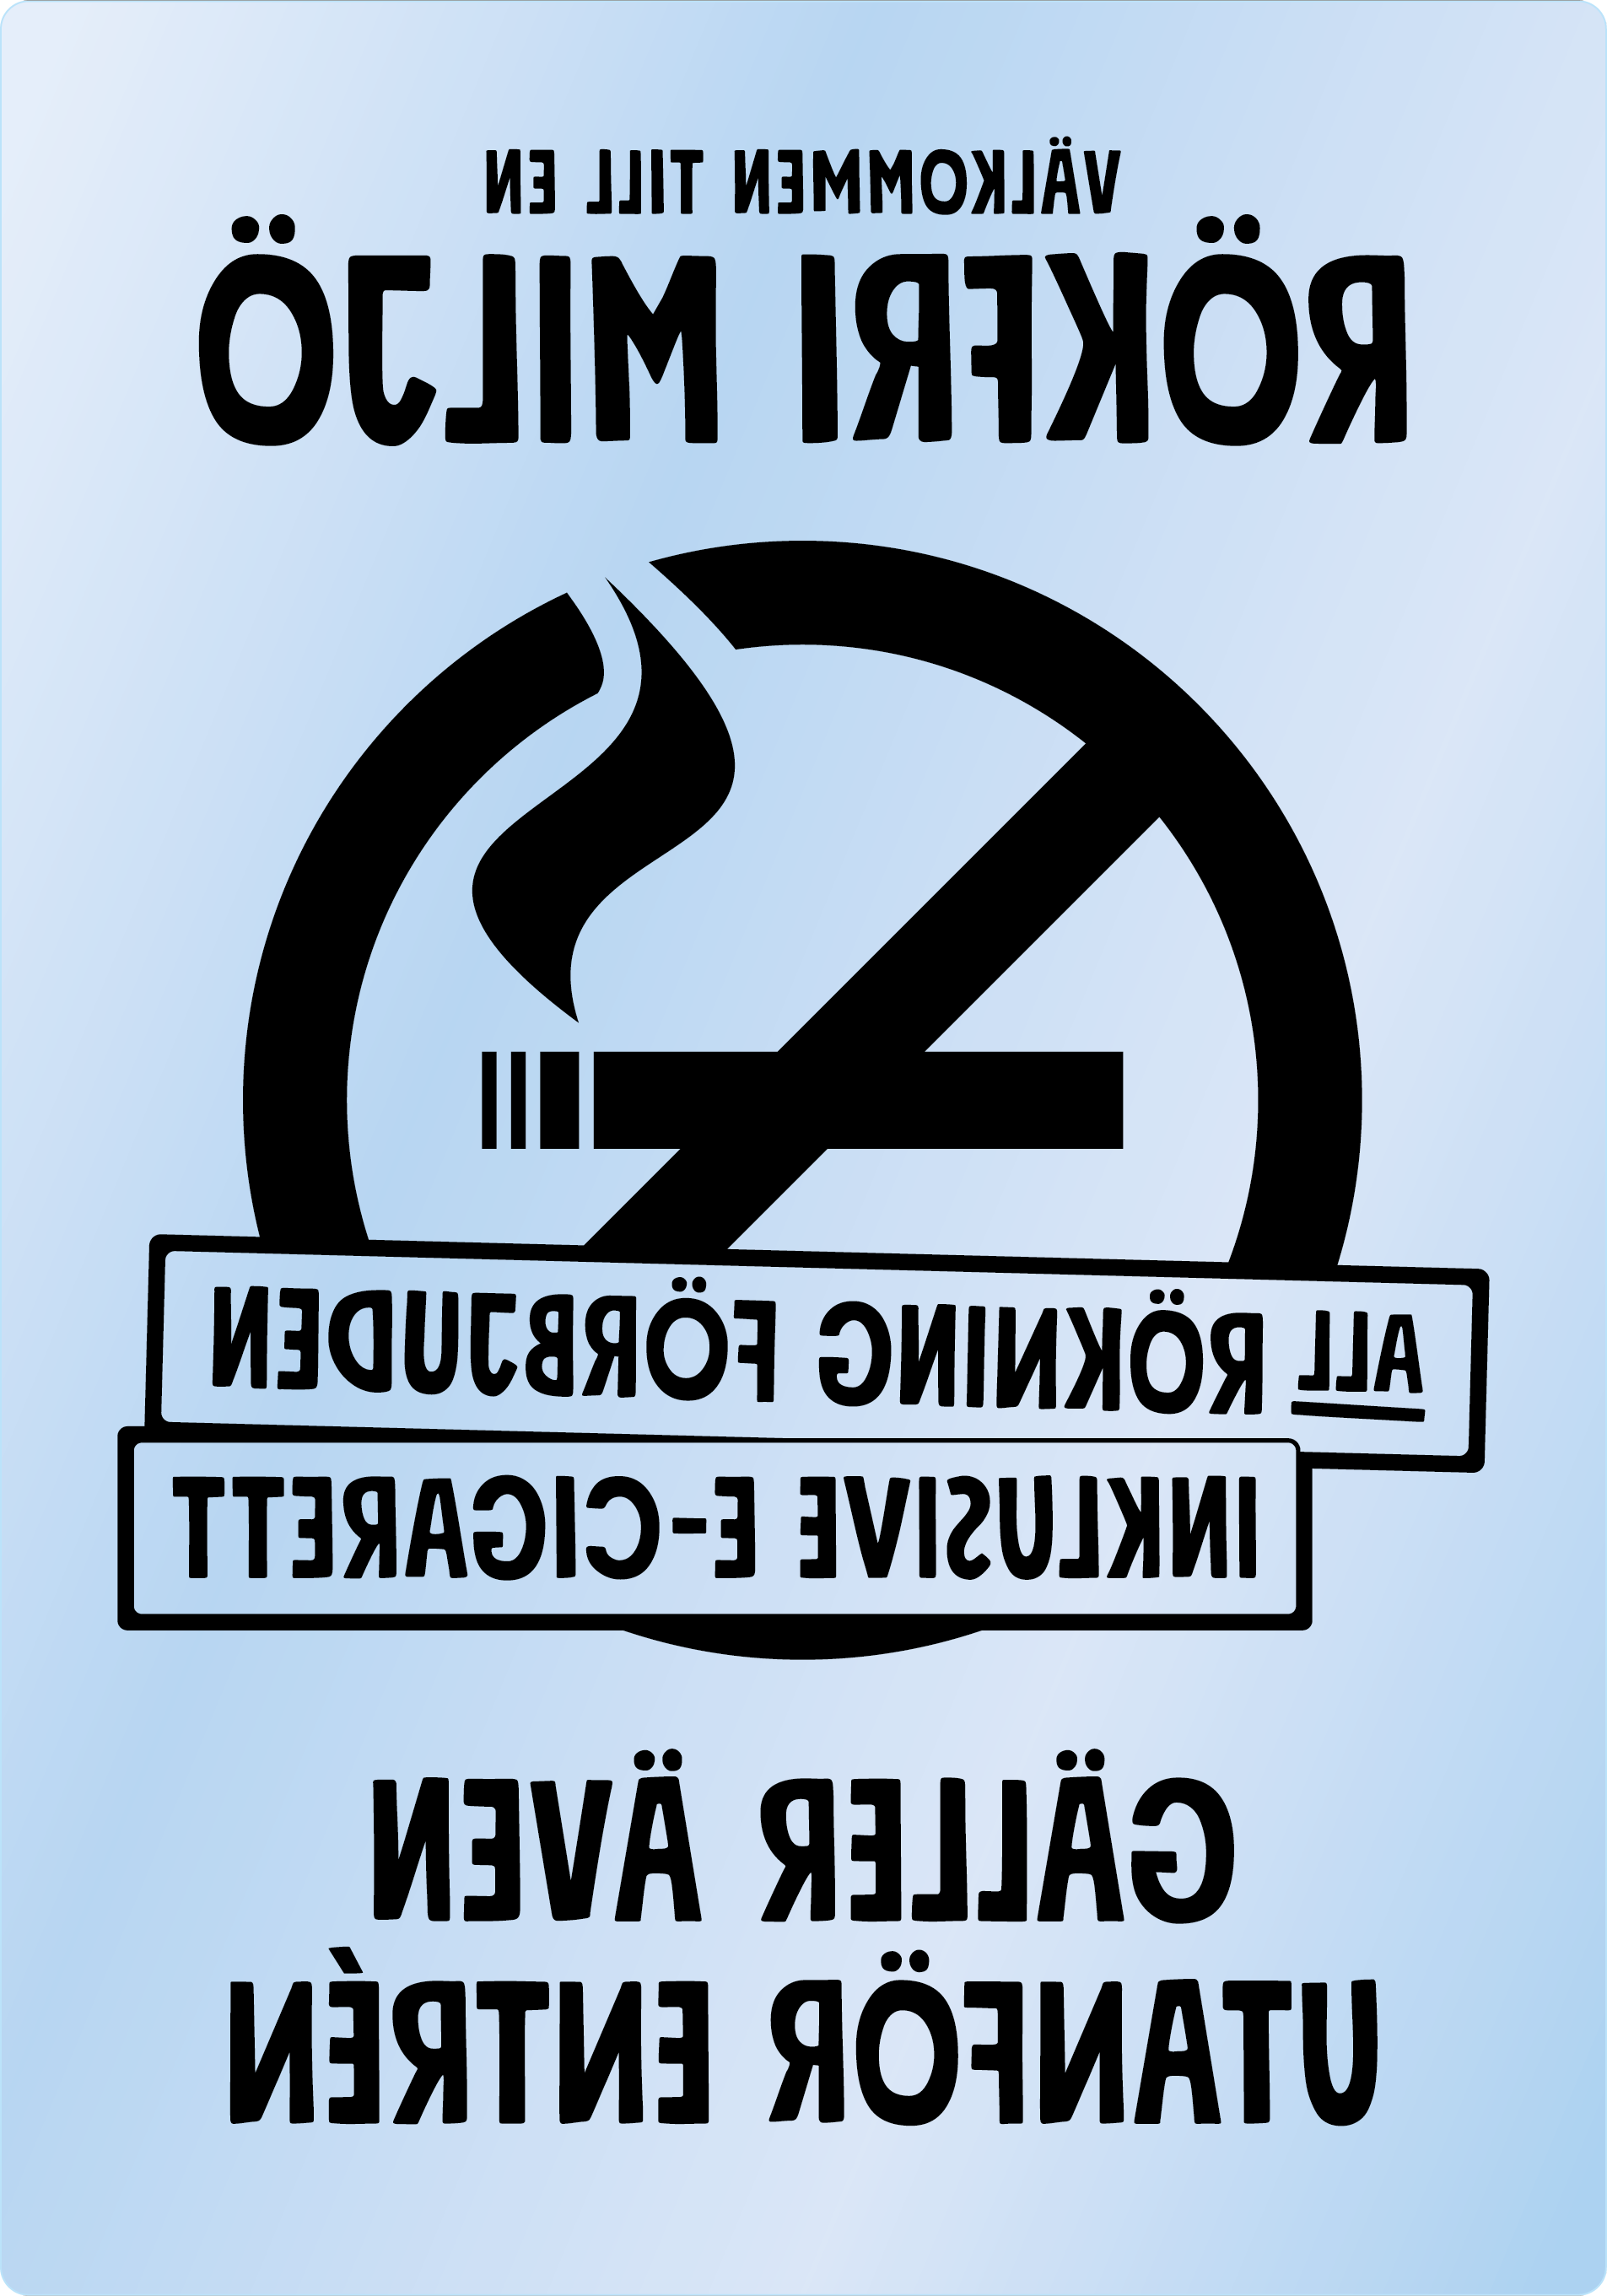 Bild rökförbudsskylt 04A13: Svart / Transparent